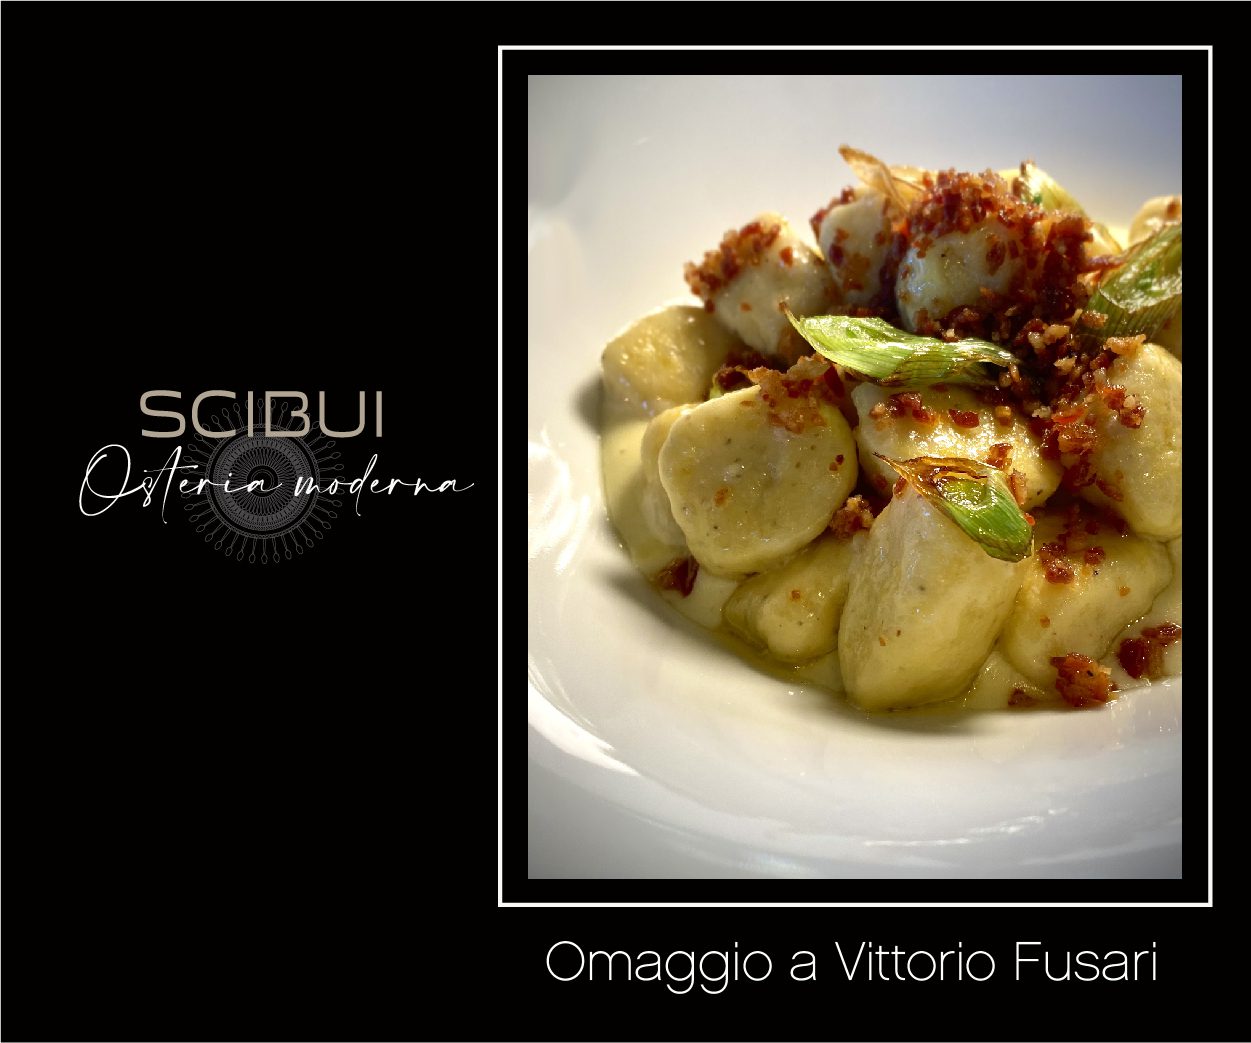 Un piatto per ricordare Vittorio Fusari: l’iniziativa di Scibui a sostegno dei presidi Slow Food